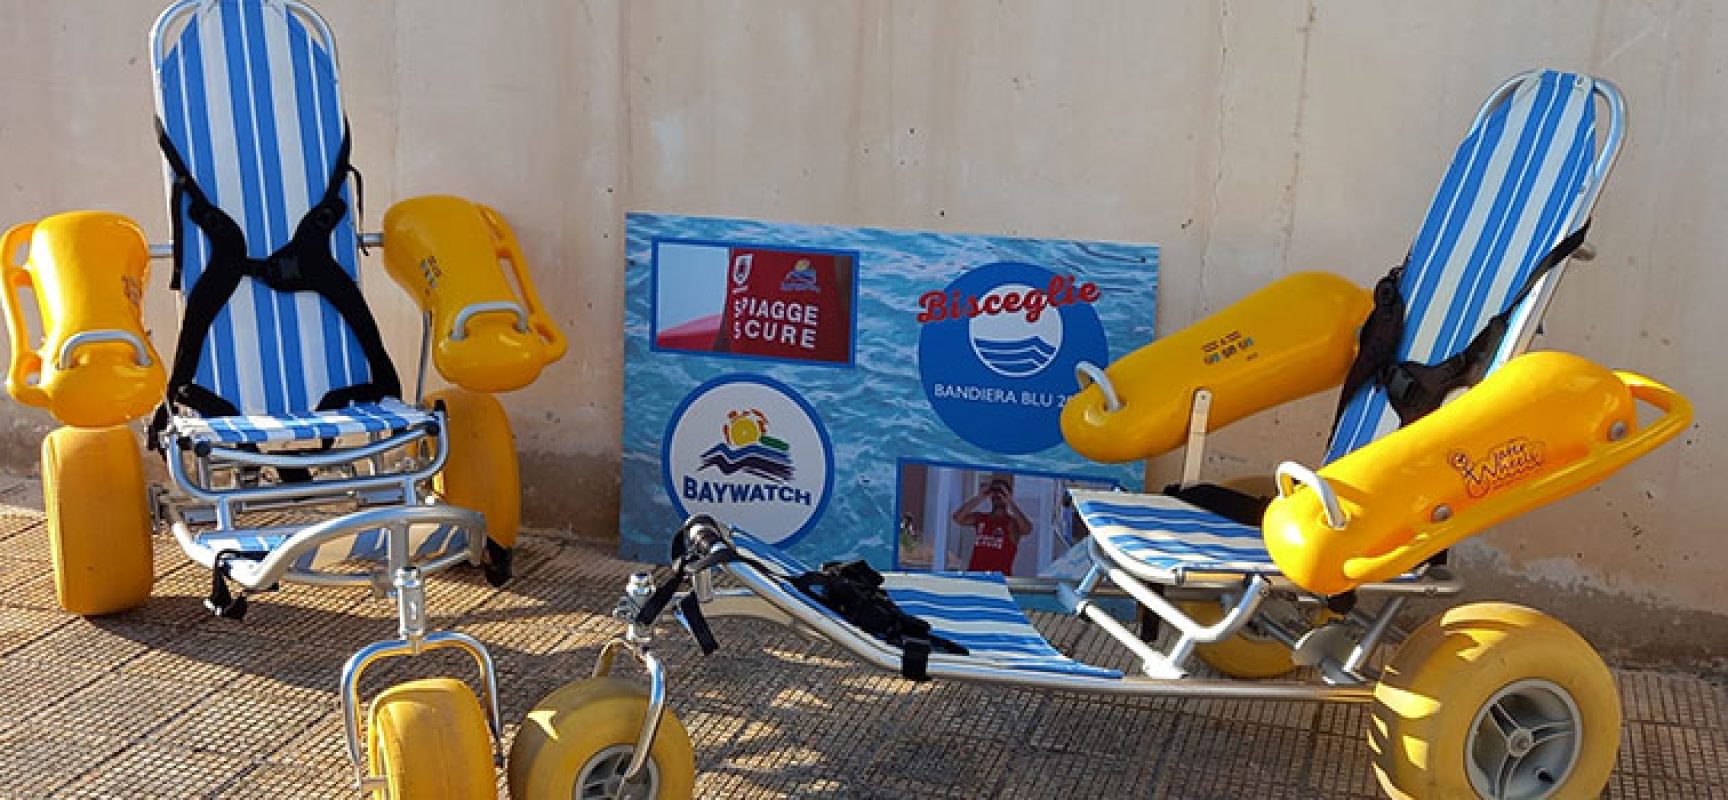 Associazione Baywatch acquista una nuova sedia Job per le persone disabili in spiaggia